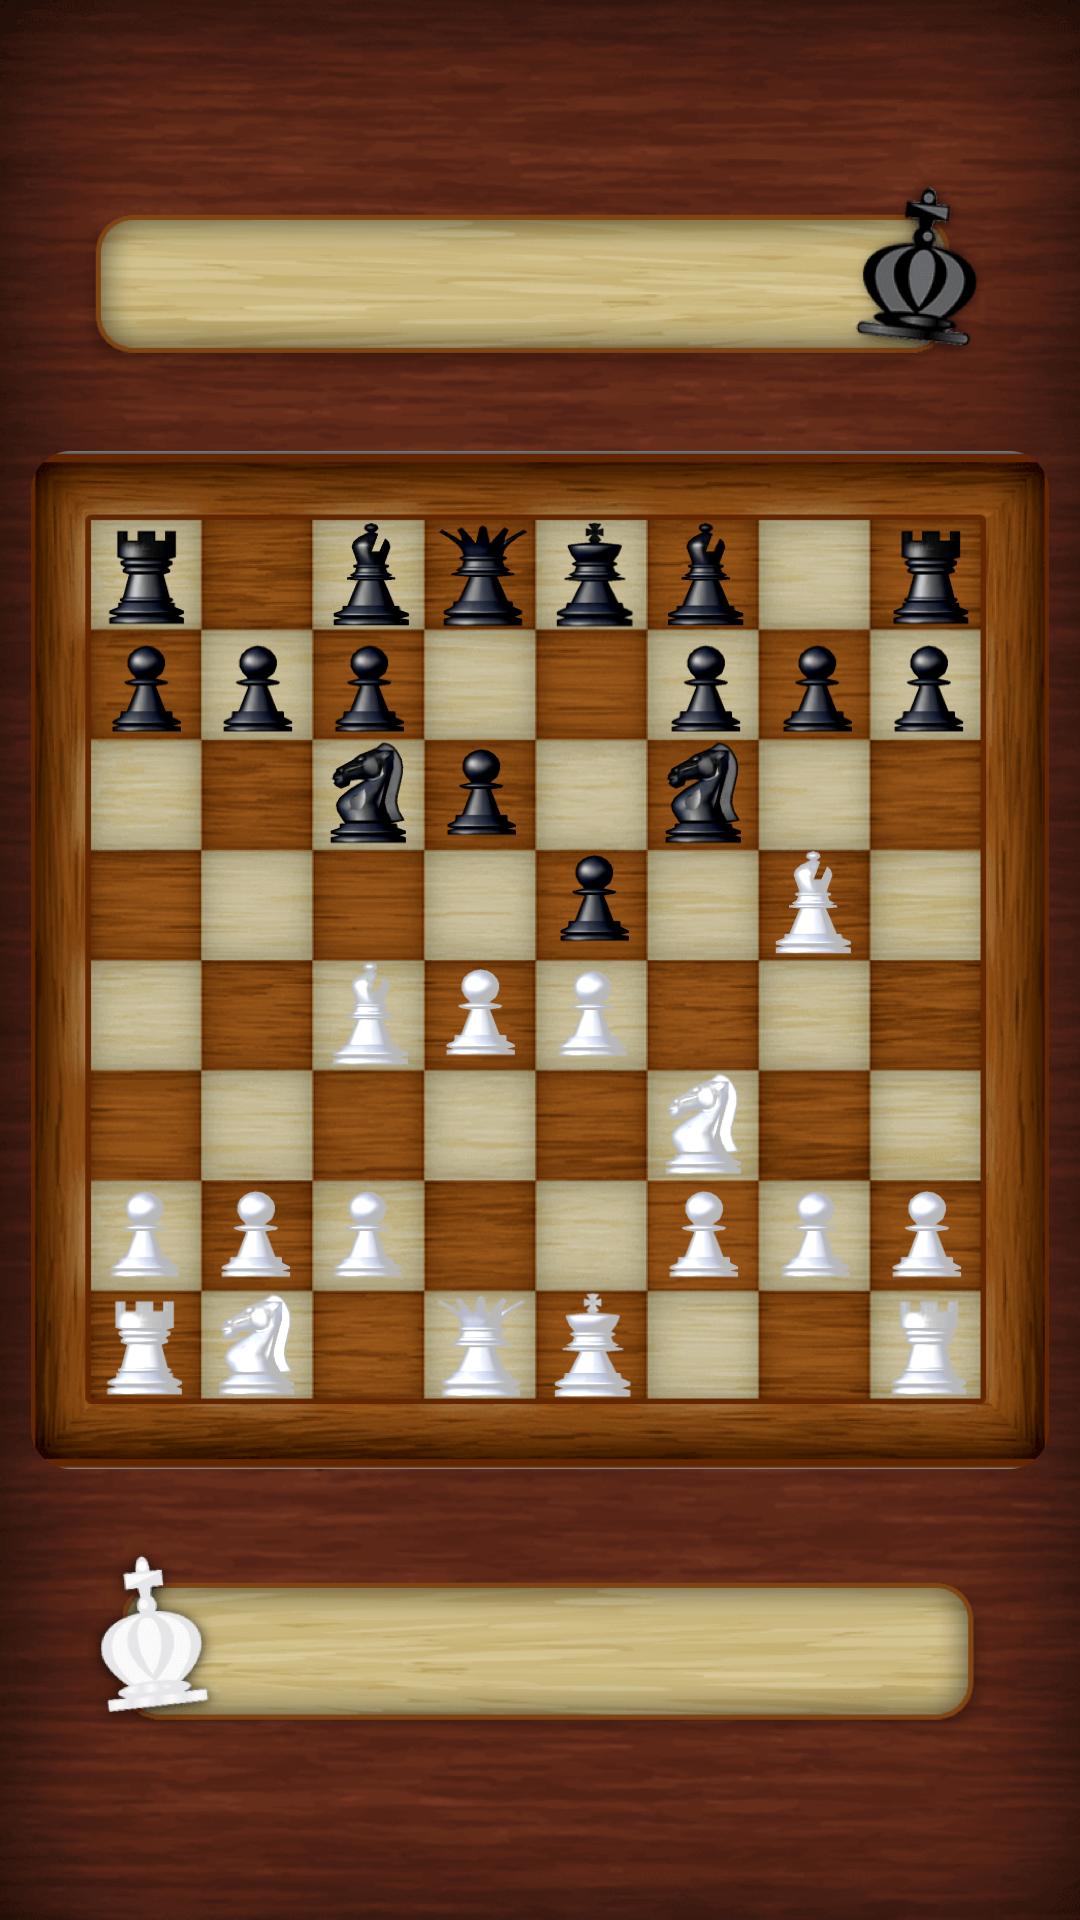 Chess Strategy board game 3.0.6 Screenshot 15